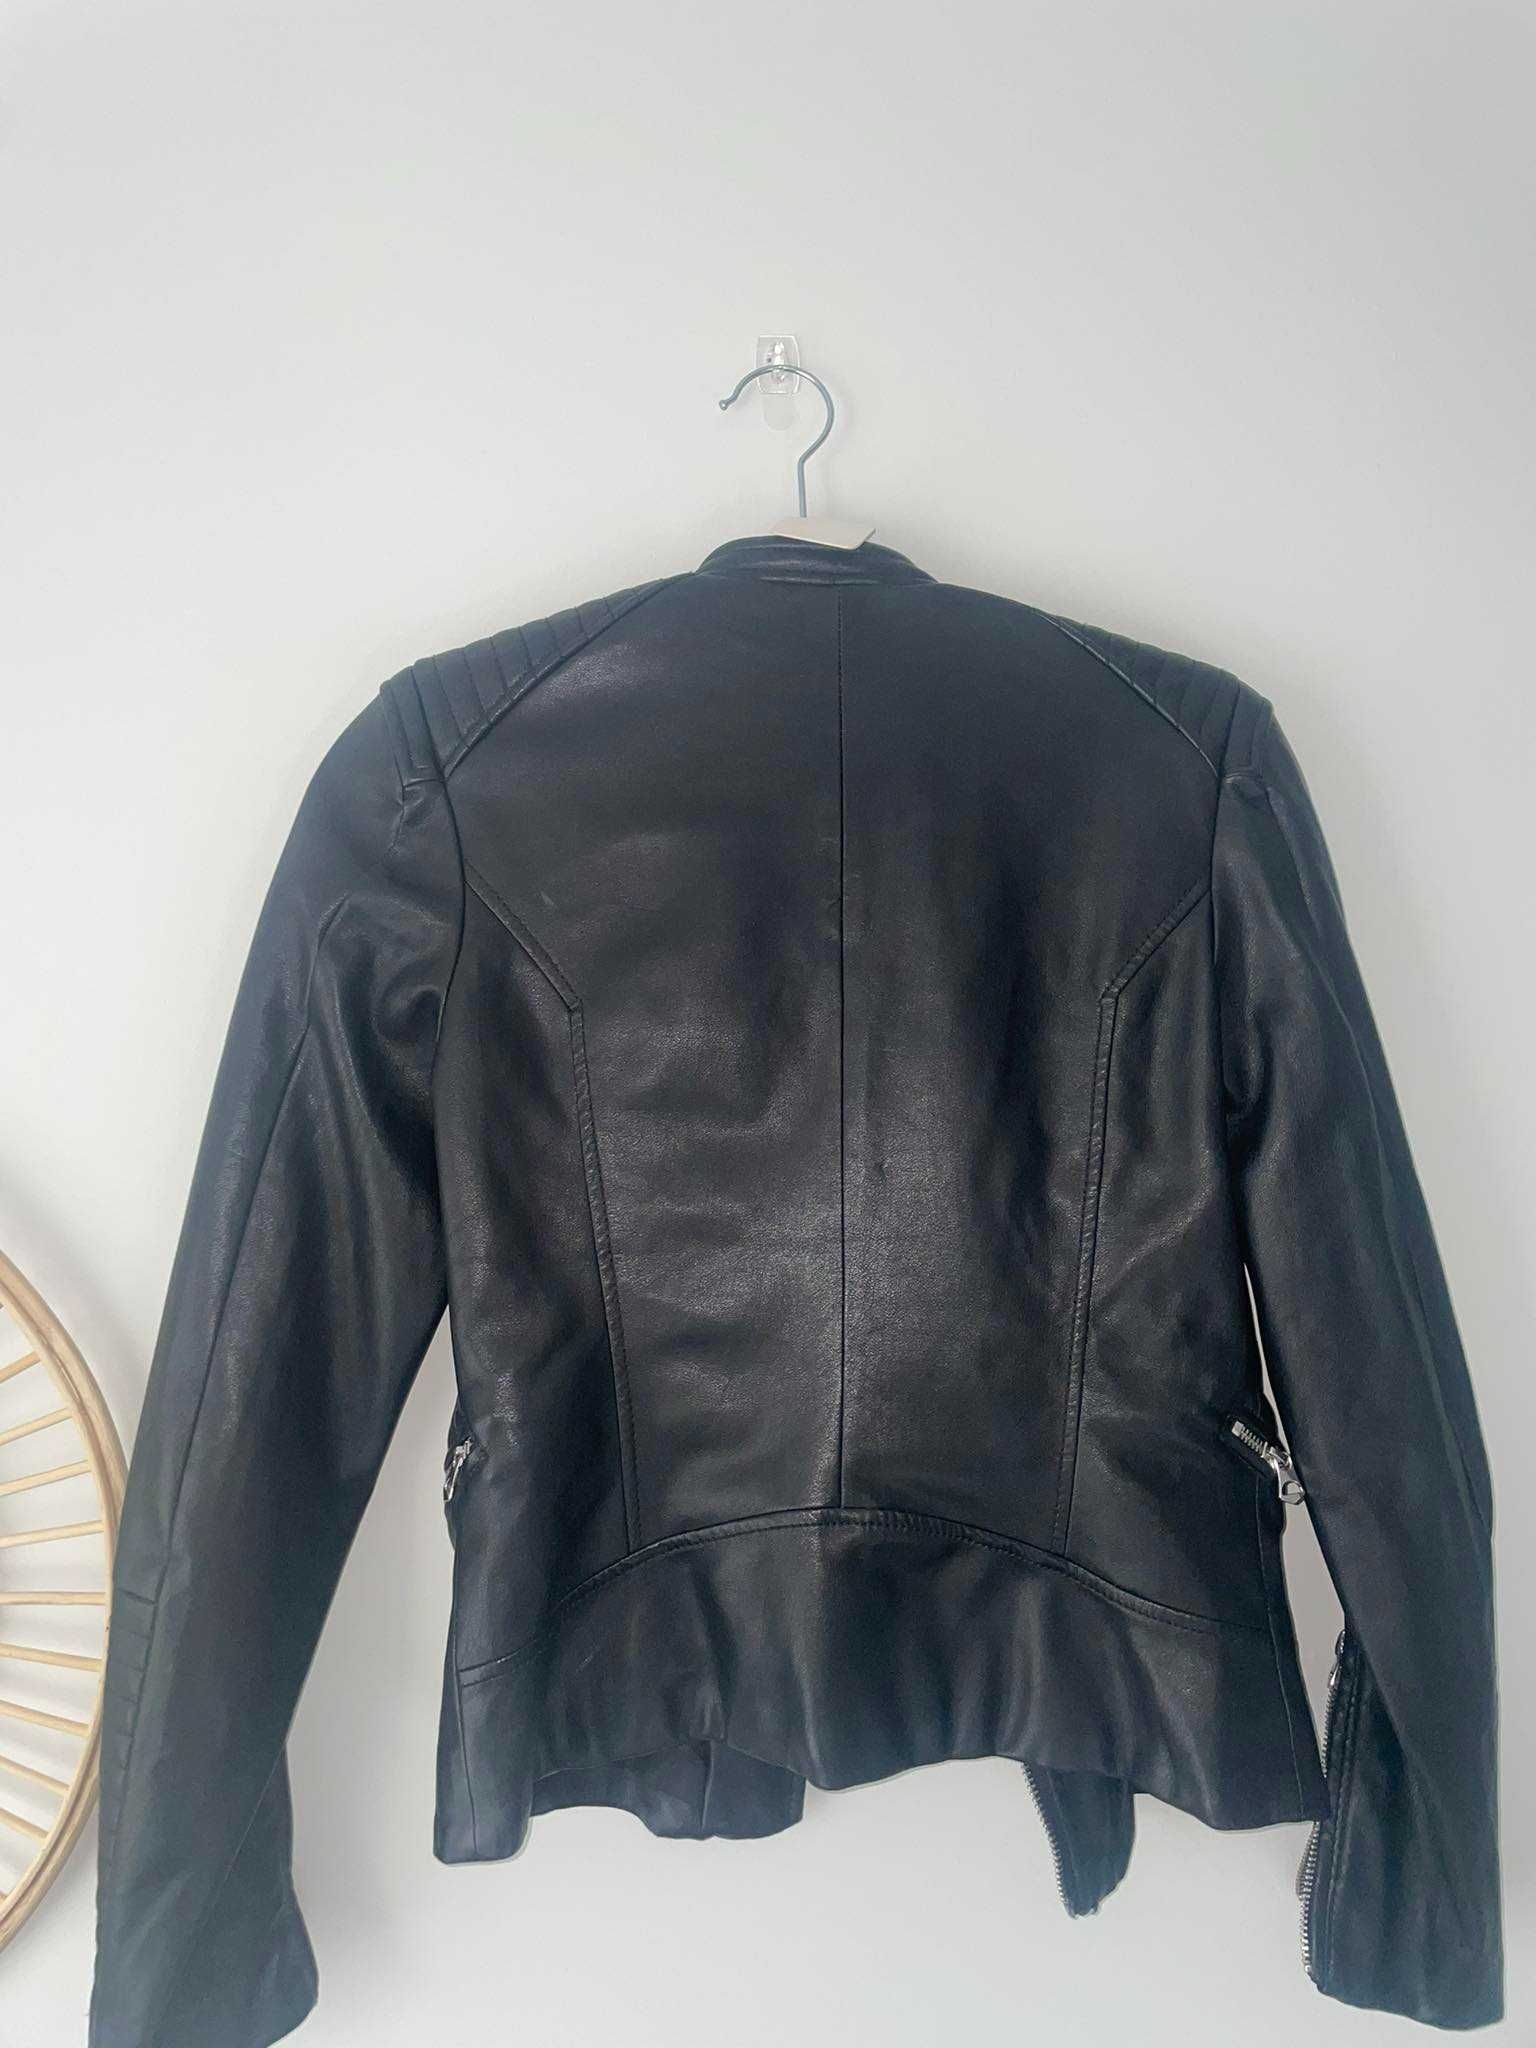 Ramoneska kurtka damska dziewczęca H&M rozmiar 34